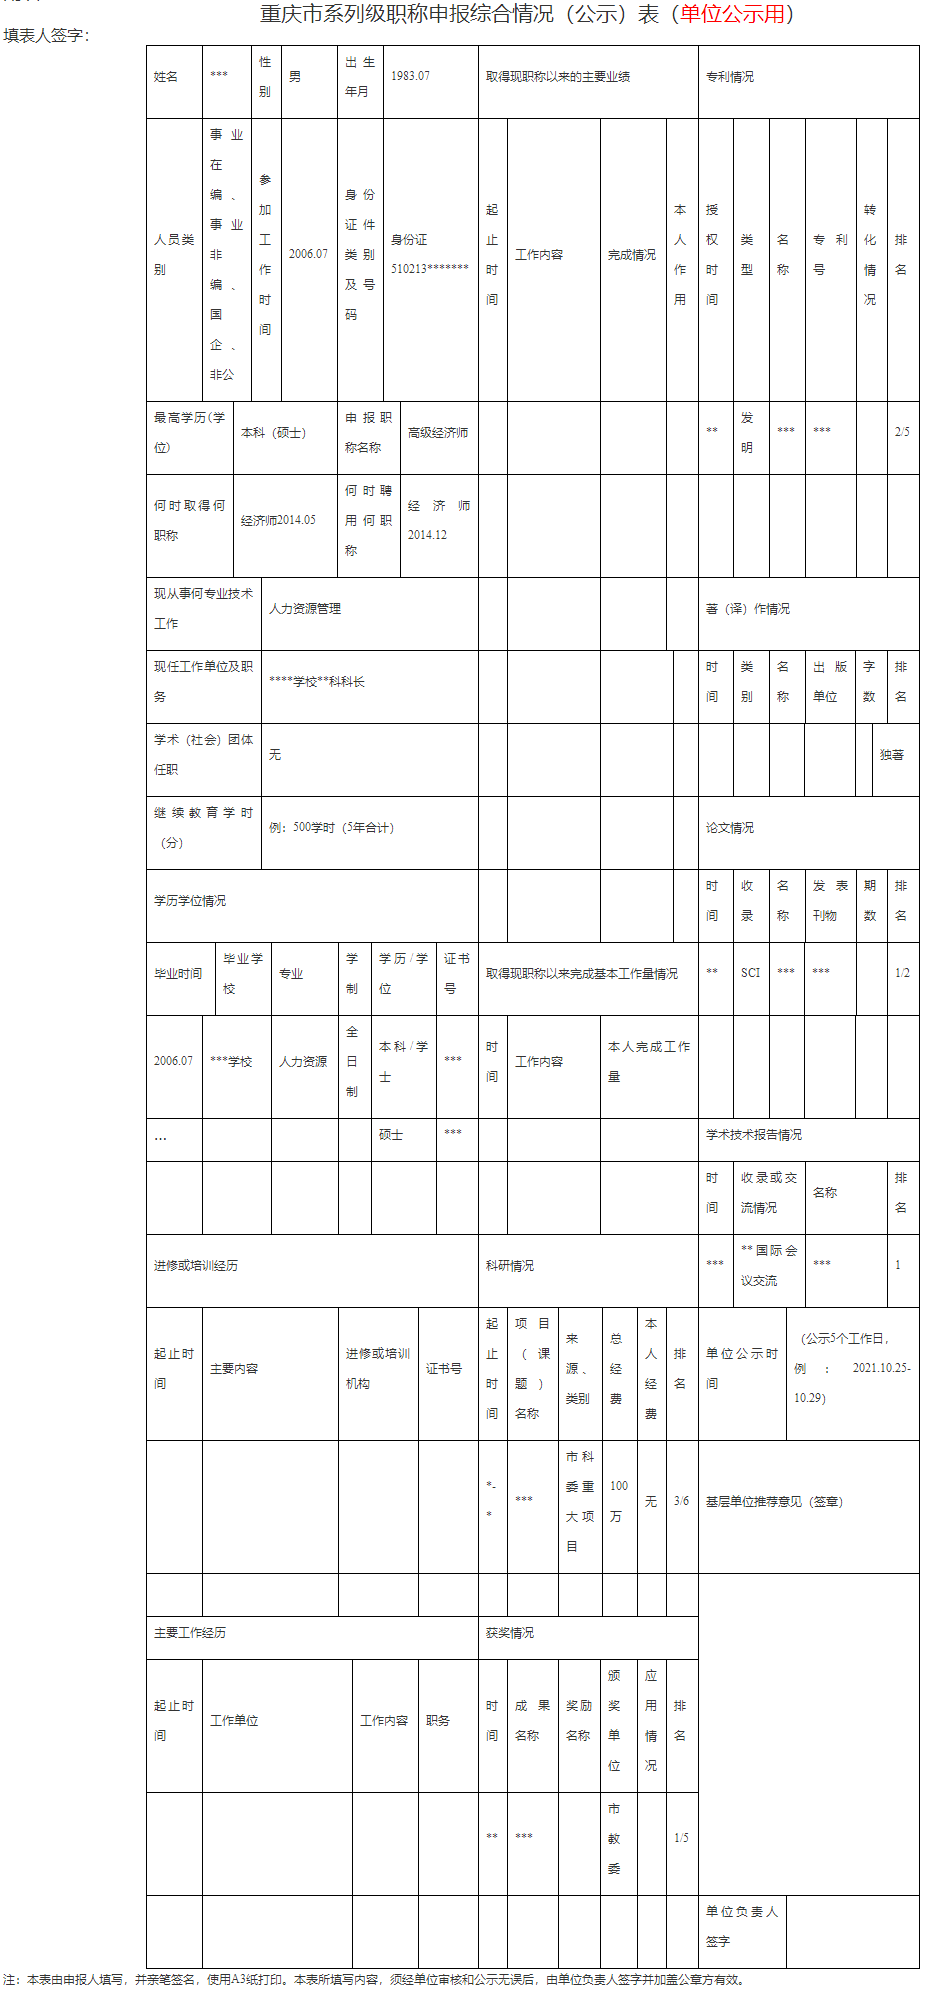 重庆市系列级职称申报综合情况（公示）表